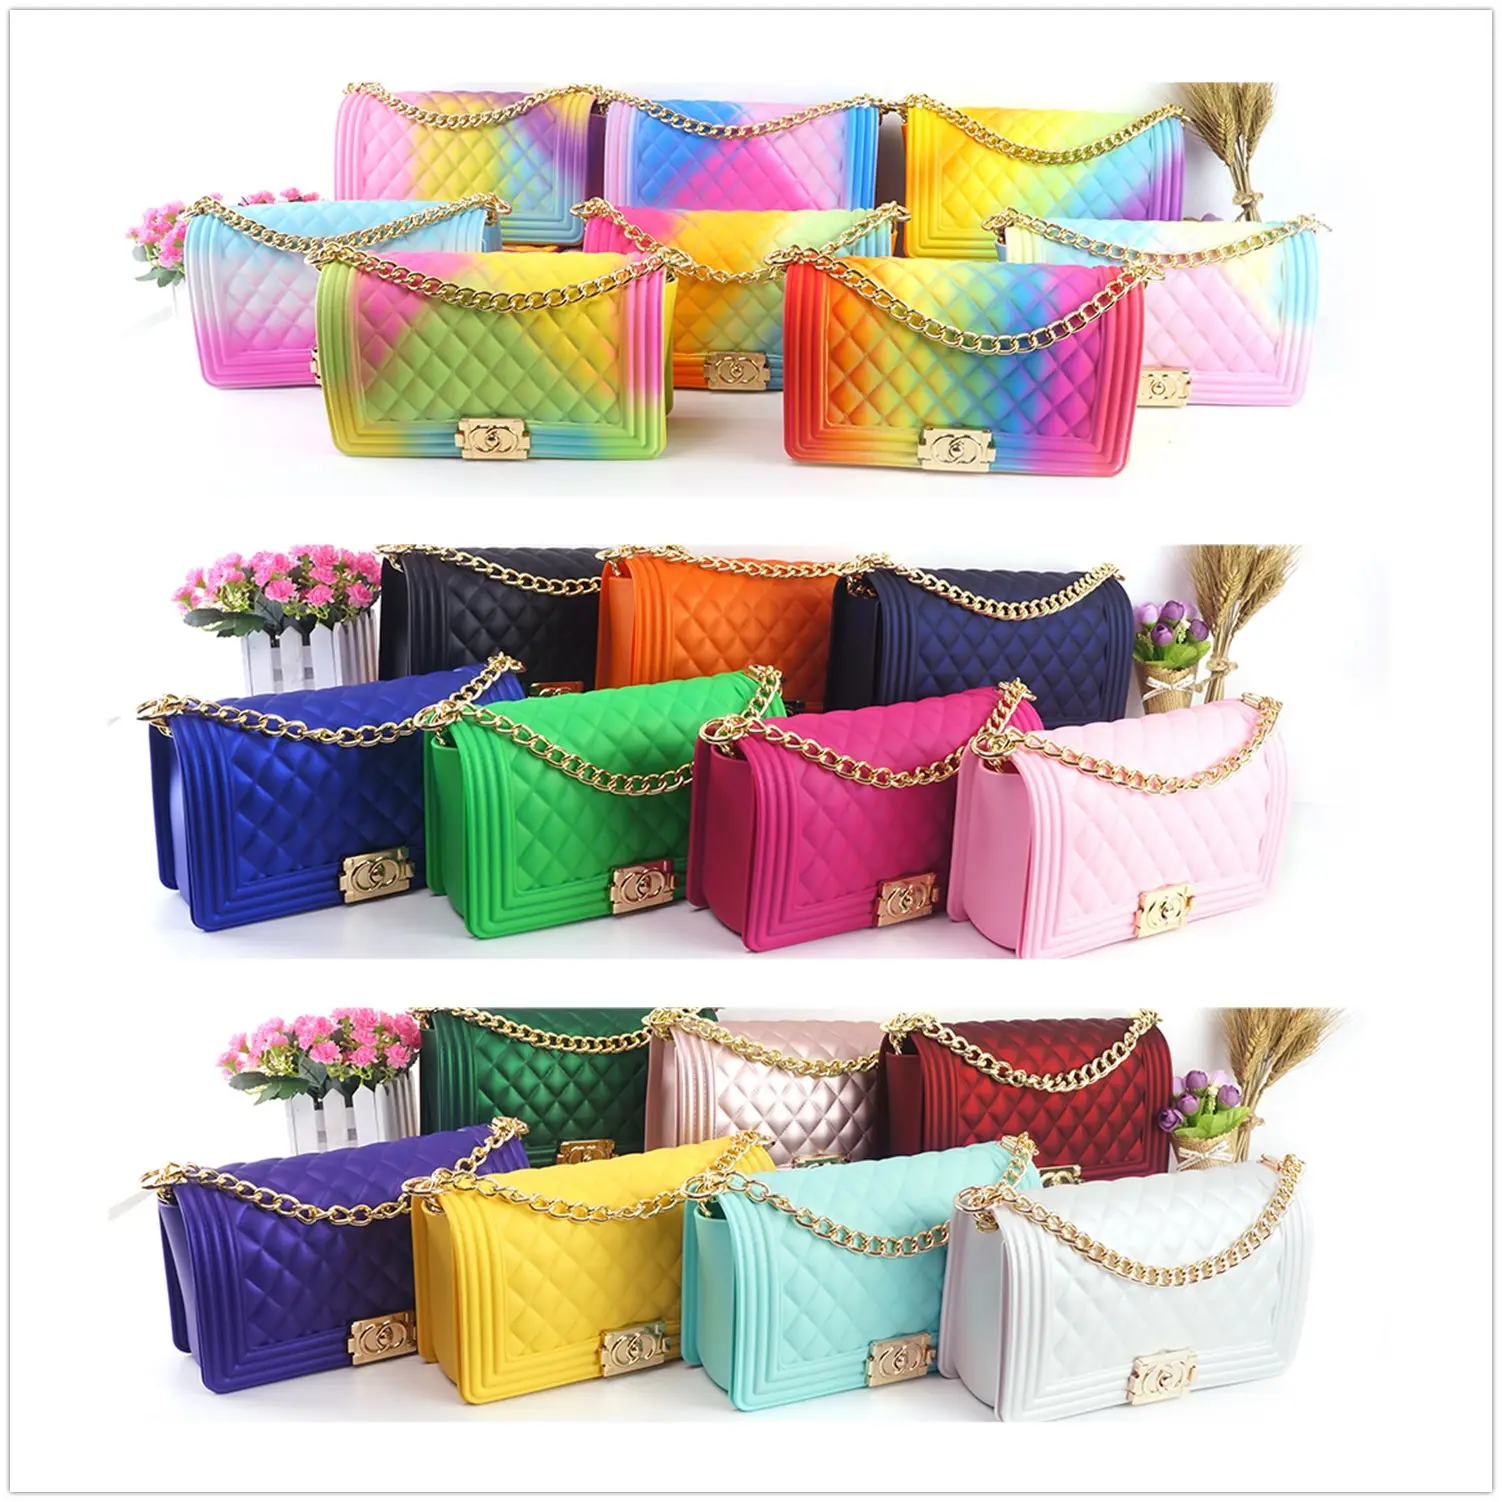 2020 Лидер продаж Мода 25 цветов для женщин Новое поступление желе кошелек конфеты хлопок цвет желе сумки новые цвета